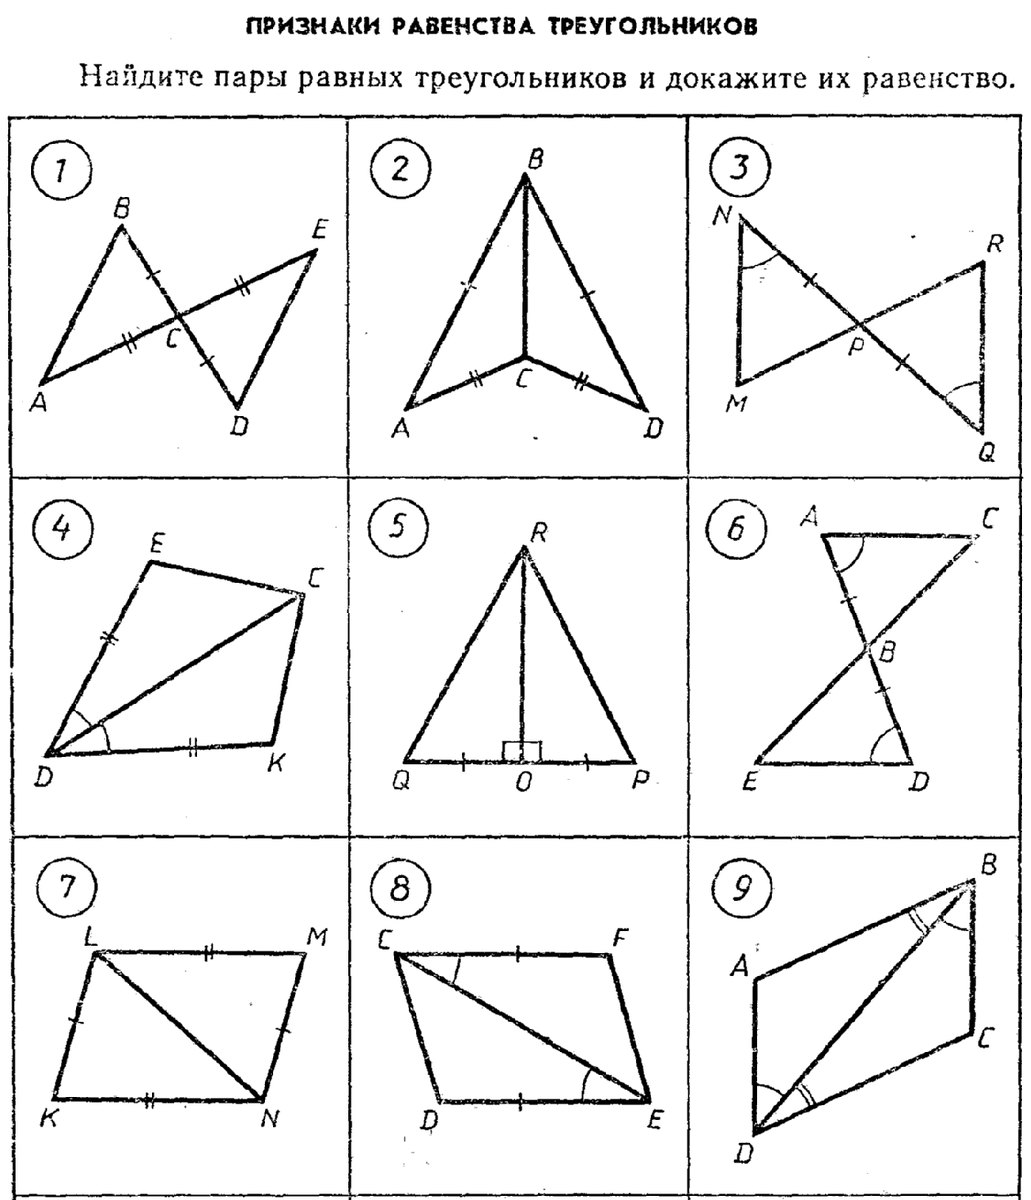 Признаки равенства треугольников являются важной темой в геометрии, которая позволяет установить, когда два треугольника равны друг другу.-2